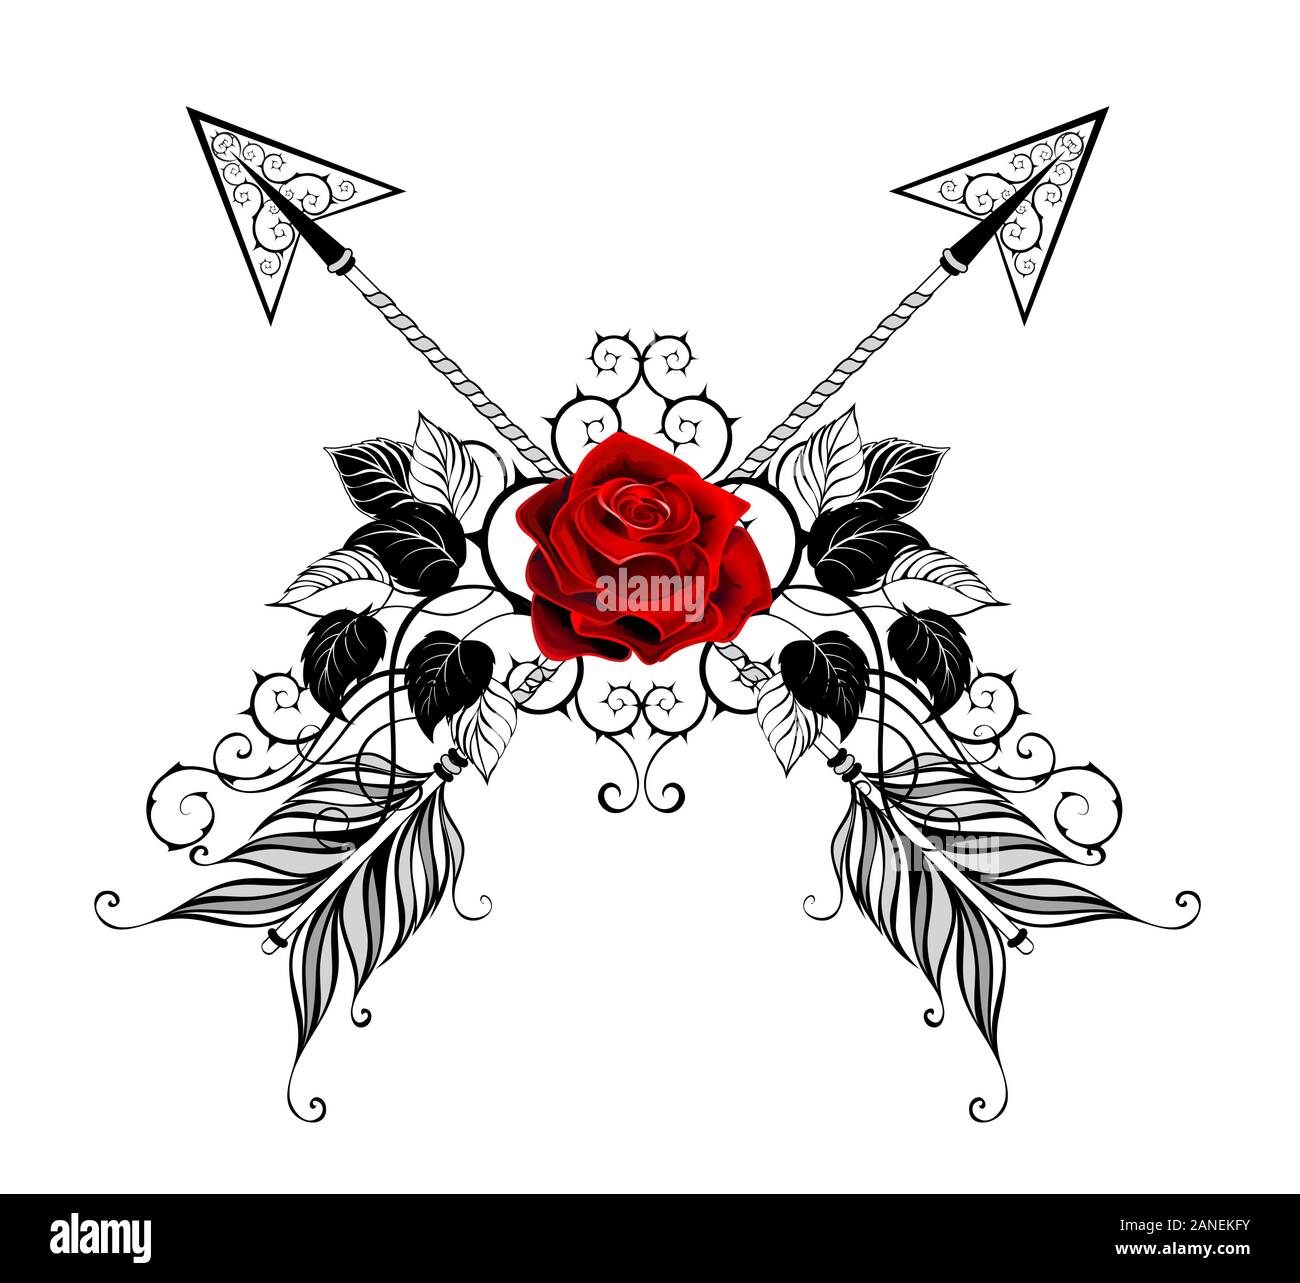 Zwei gekreuzte, gemusterten Pfeile mit Rot dekoriert, blühende Rosen mit schwarzen Blätter und Stängel auf weißem Hintergrund. Tattoo Stil. Stock Vektor